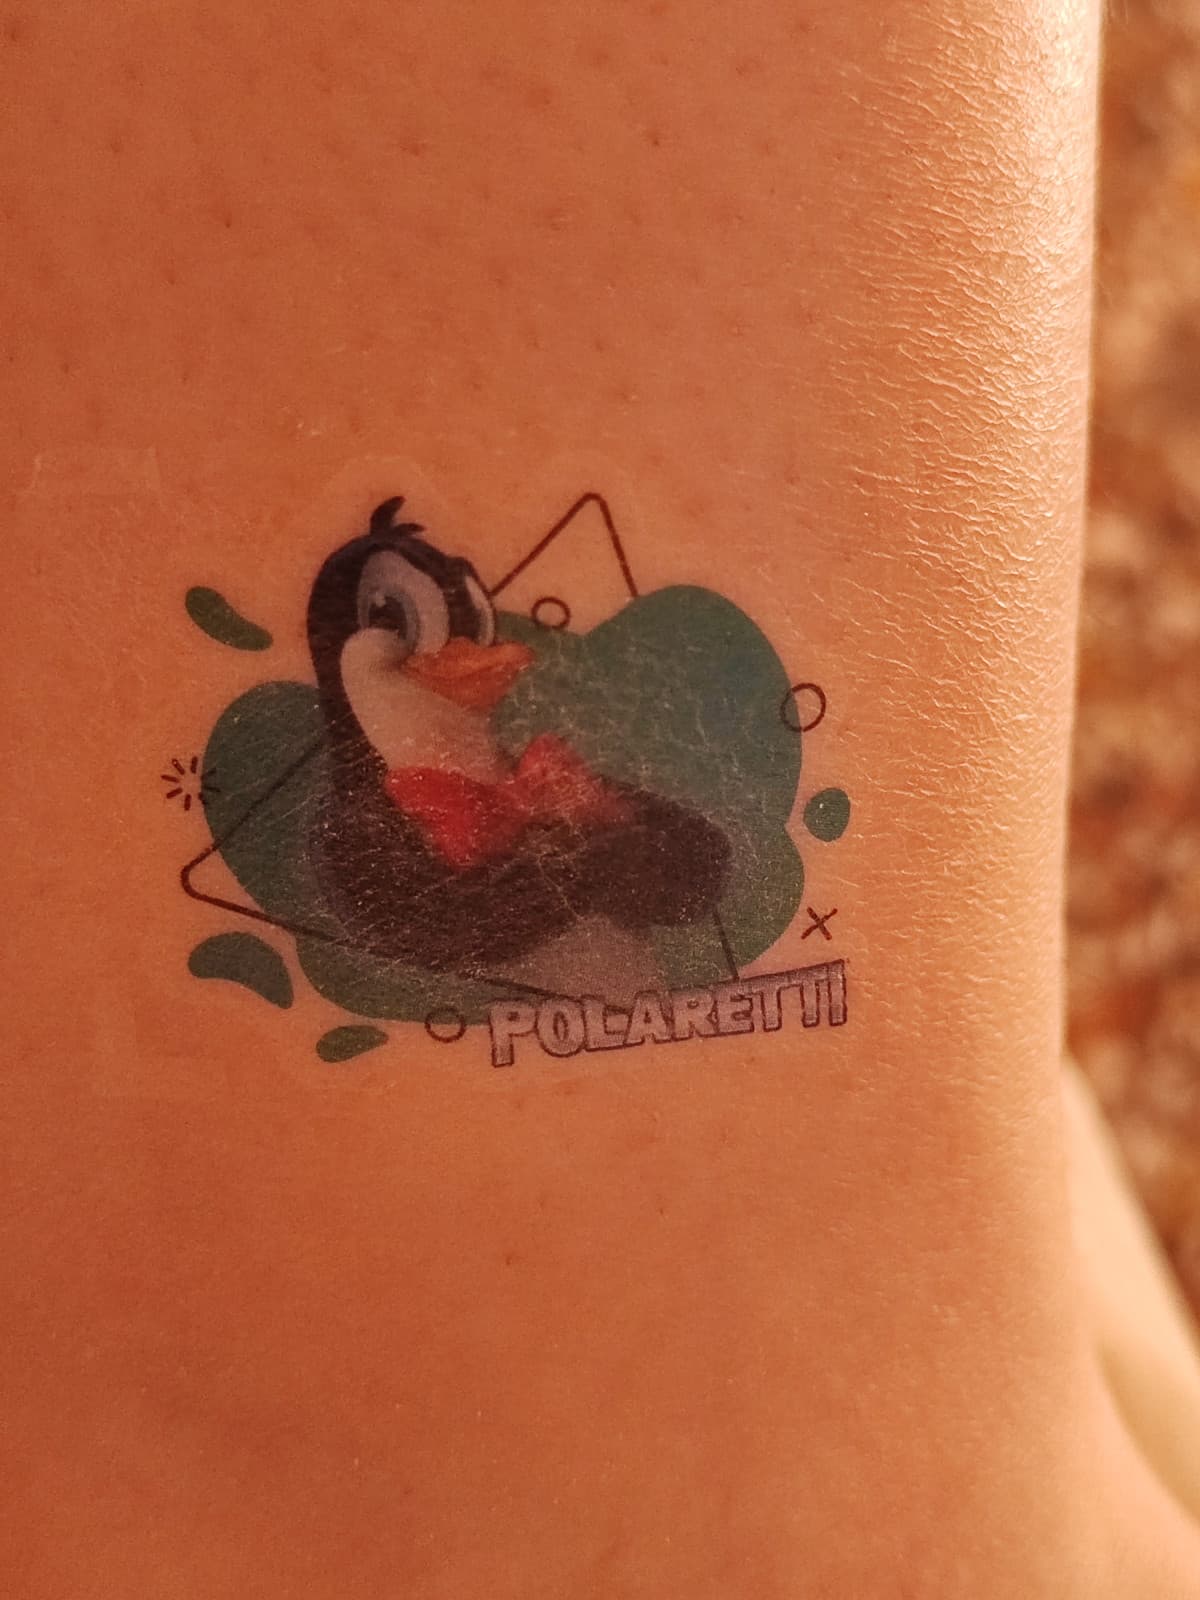 Sono troppo ribelle, ho fatto un tatuaggio stamattina e mia madre non lo sa